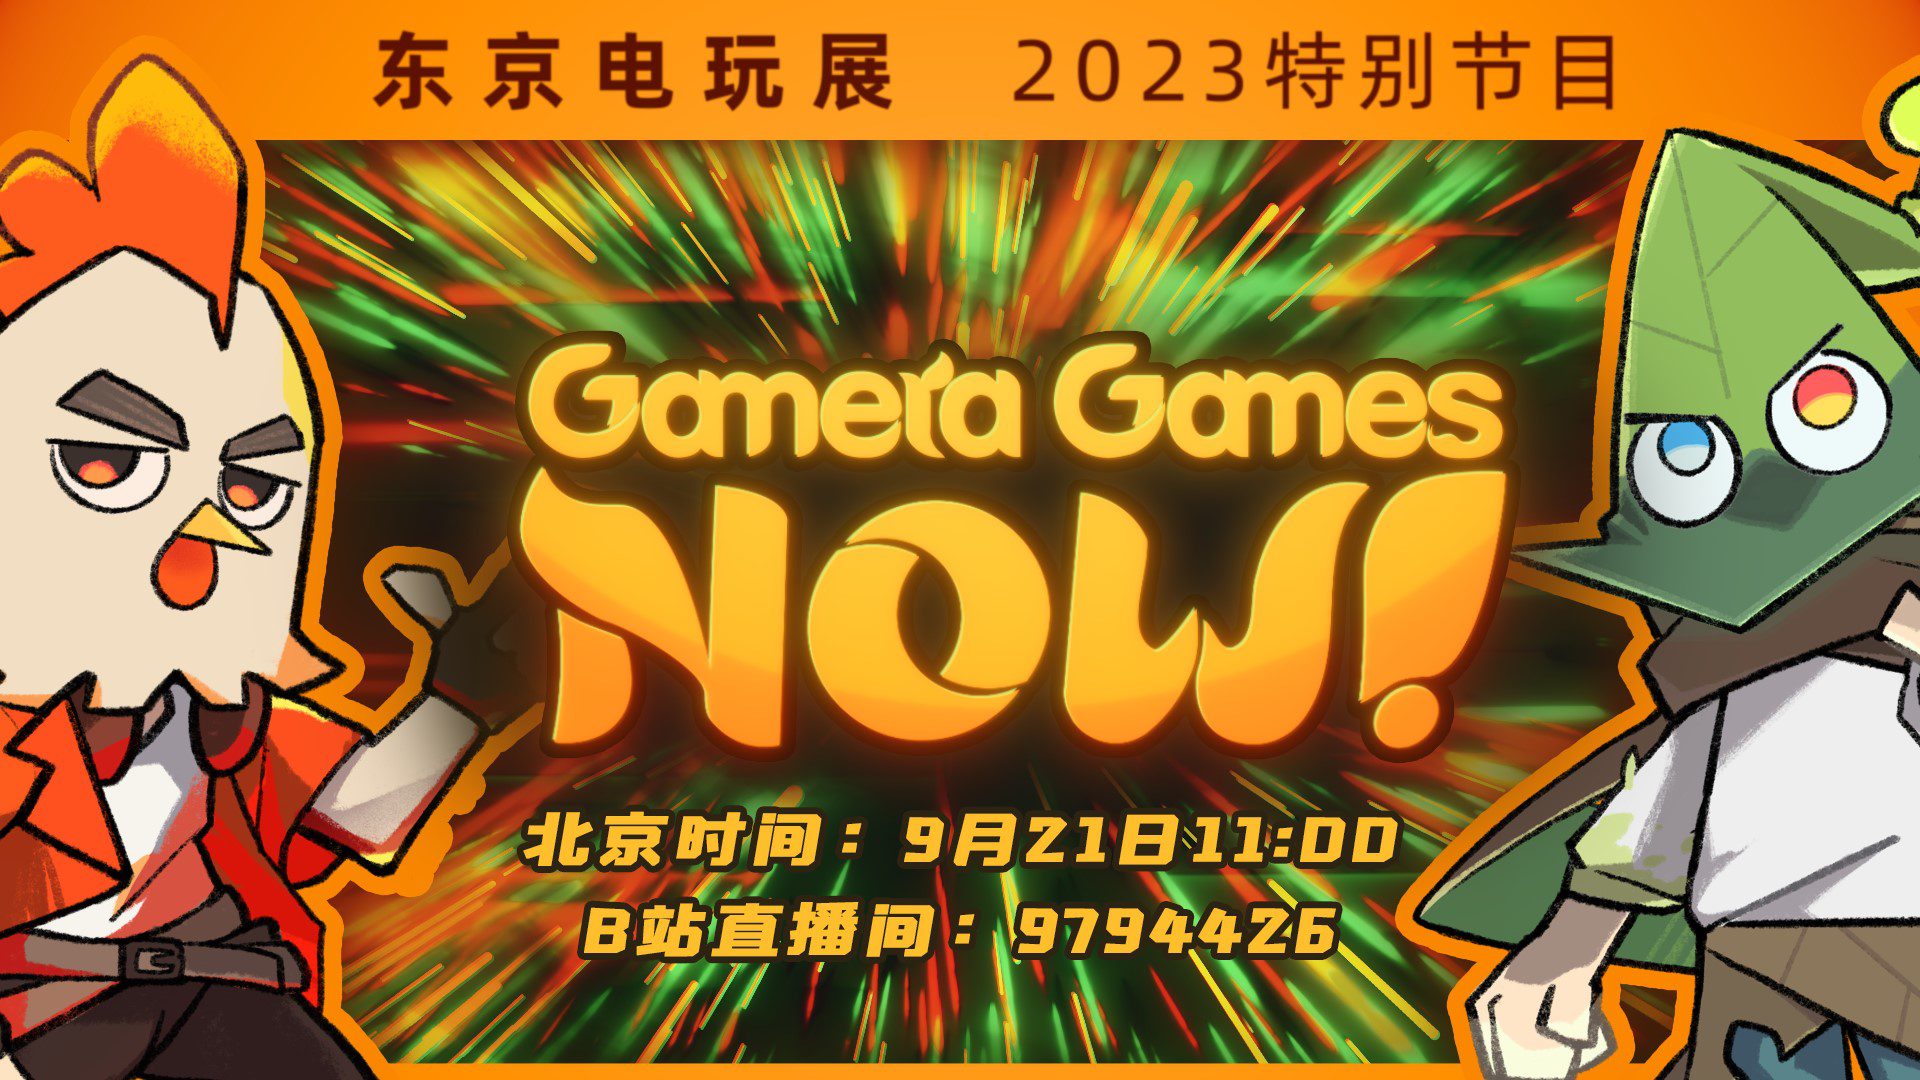 Gamera Games携多款游戏出展TGS2023 将连续第四年举办线上发布会